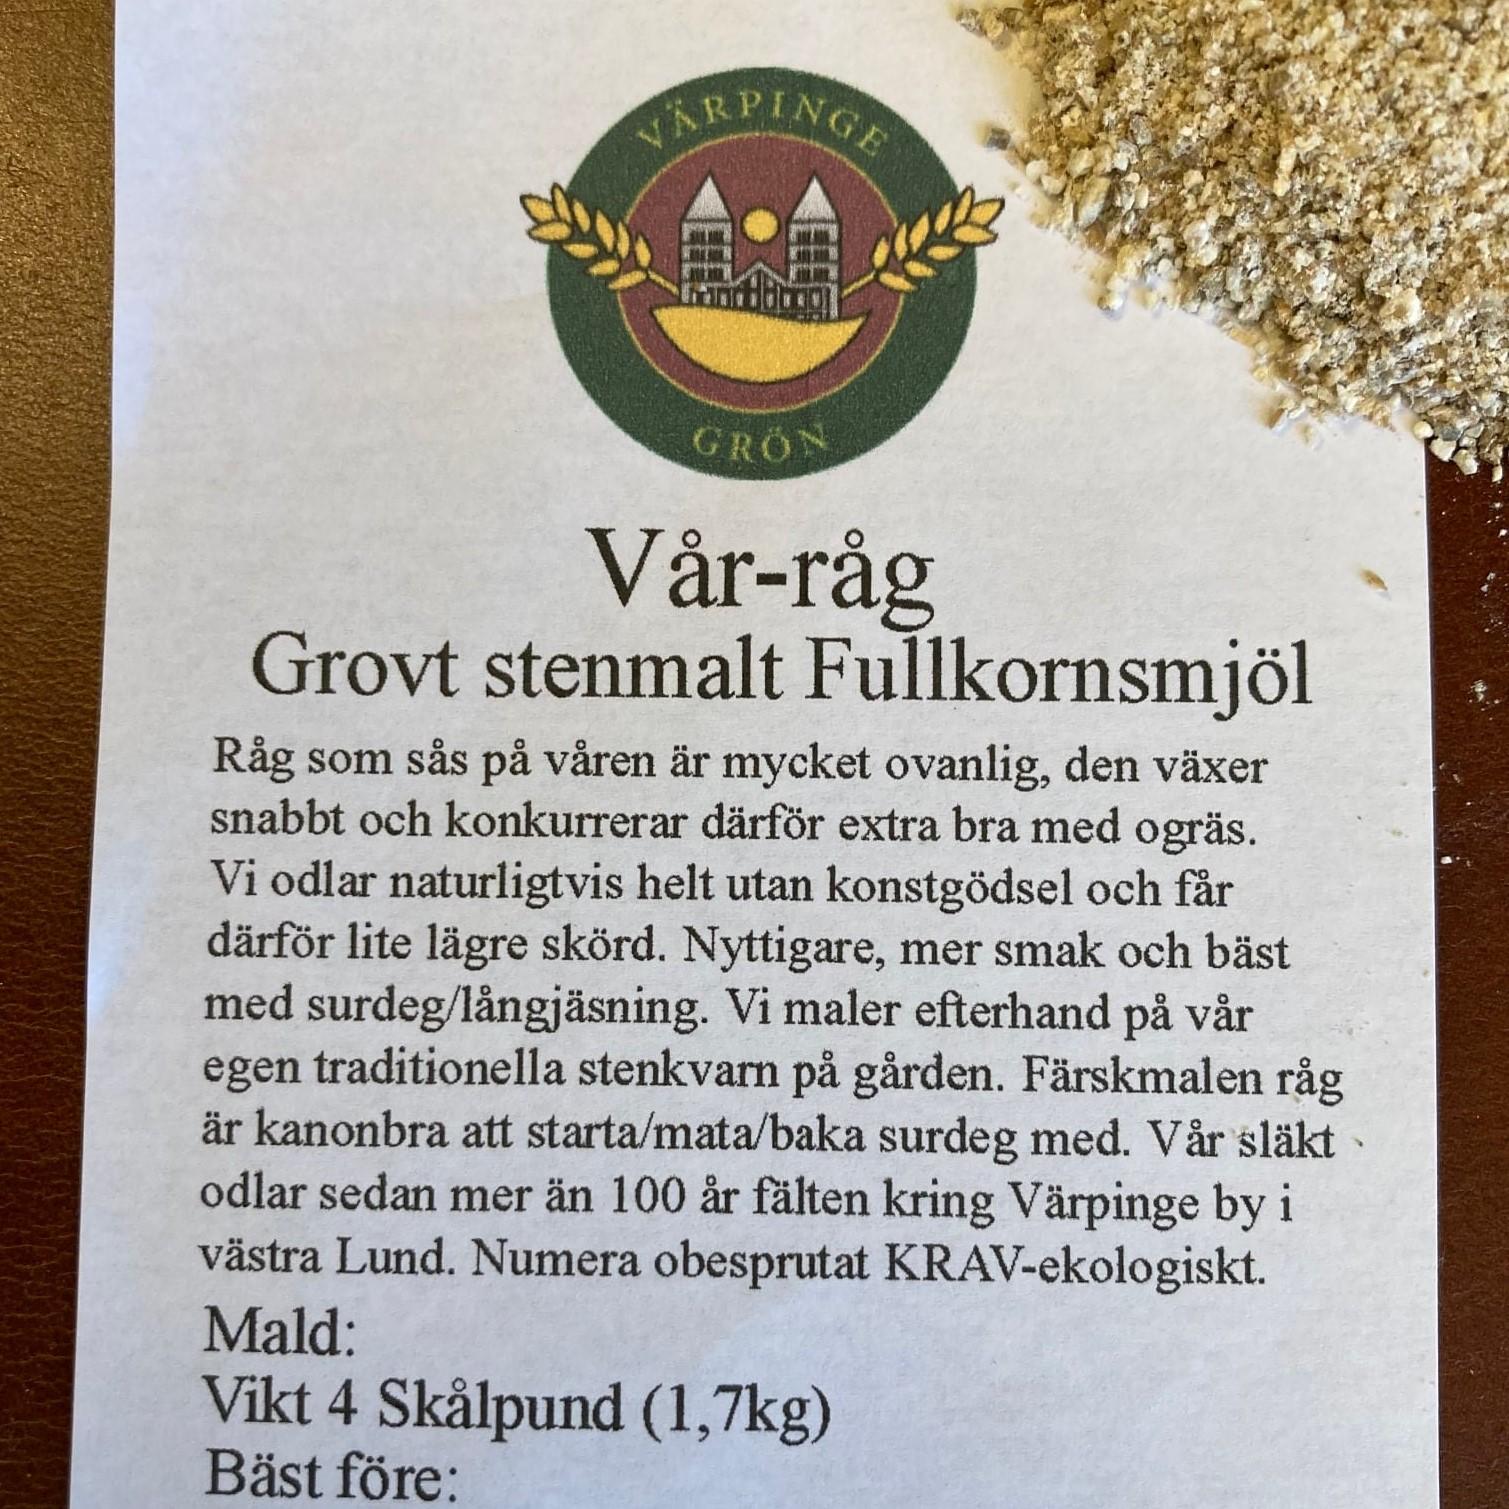 Värpinge Grön's Stone ground rye flour '